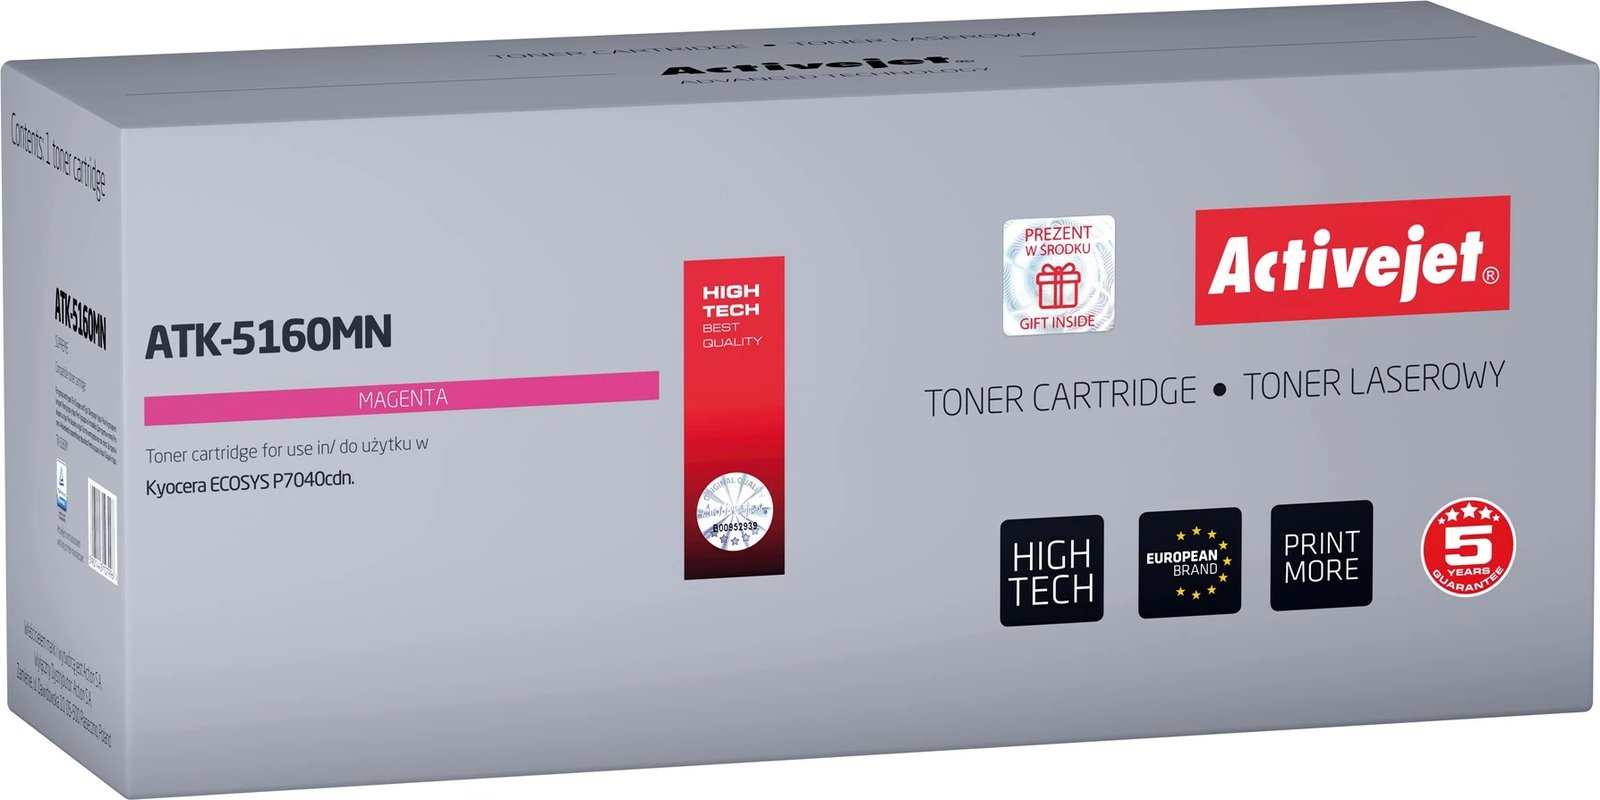 Toner zëvendësues Activejet ATK-5160MN për printerët Kyocera, 12000 faqe, rozë